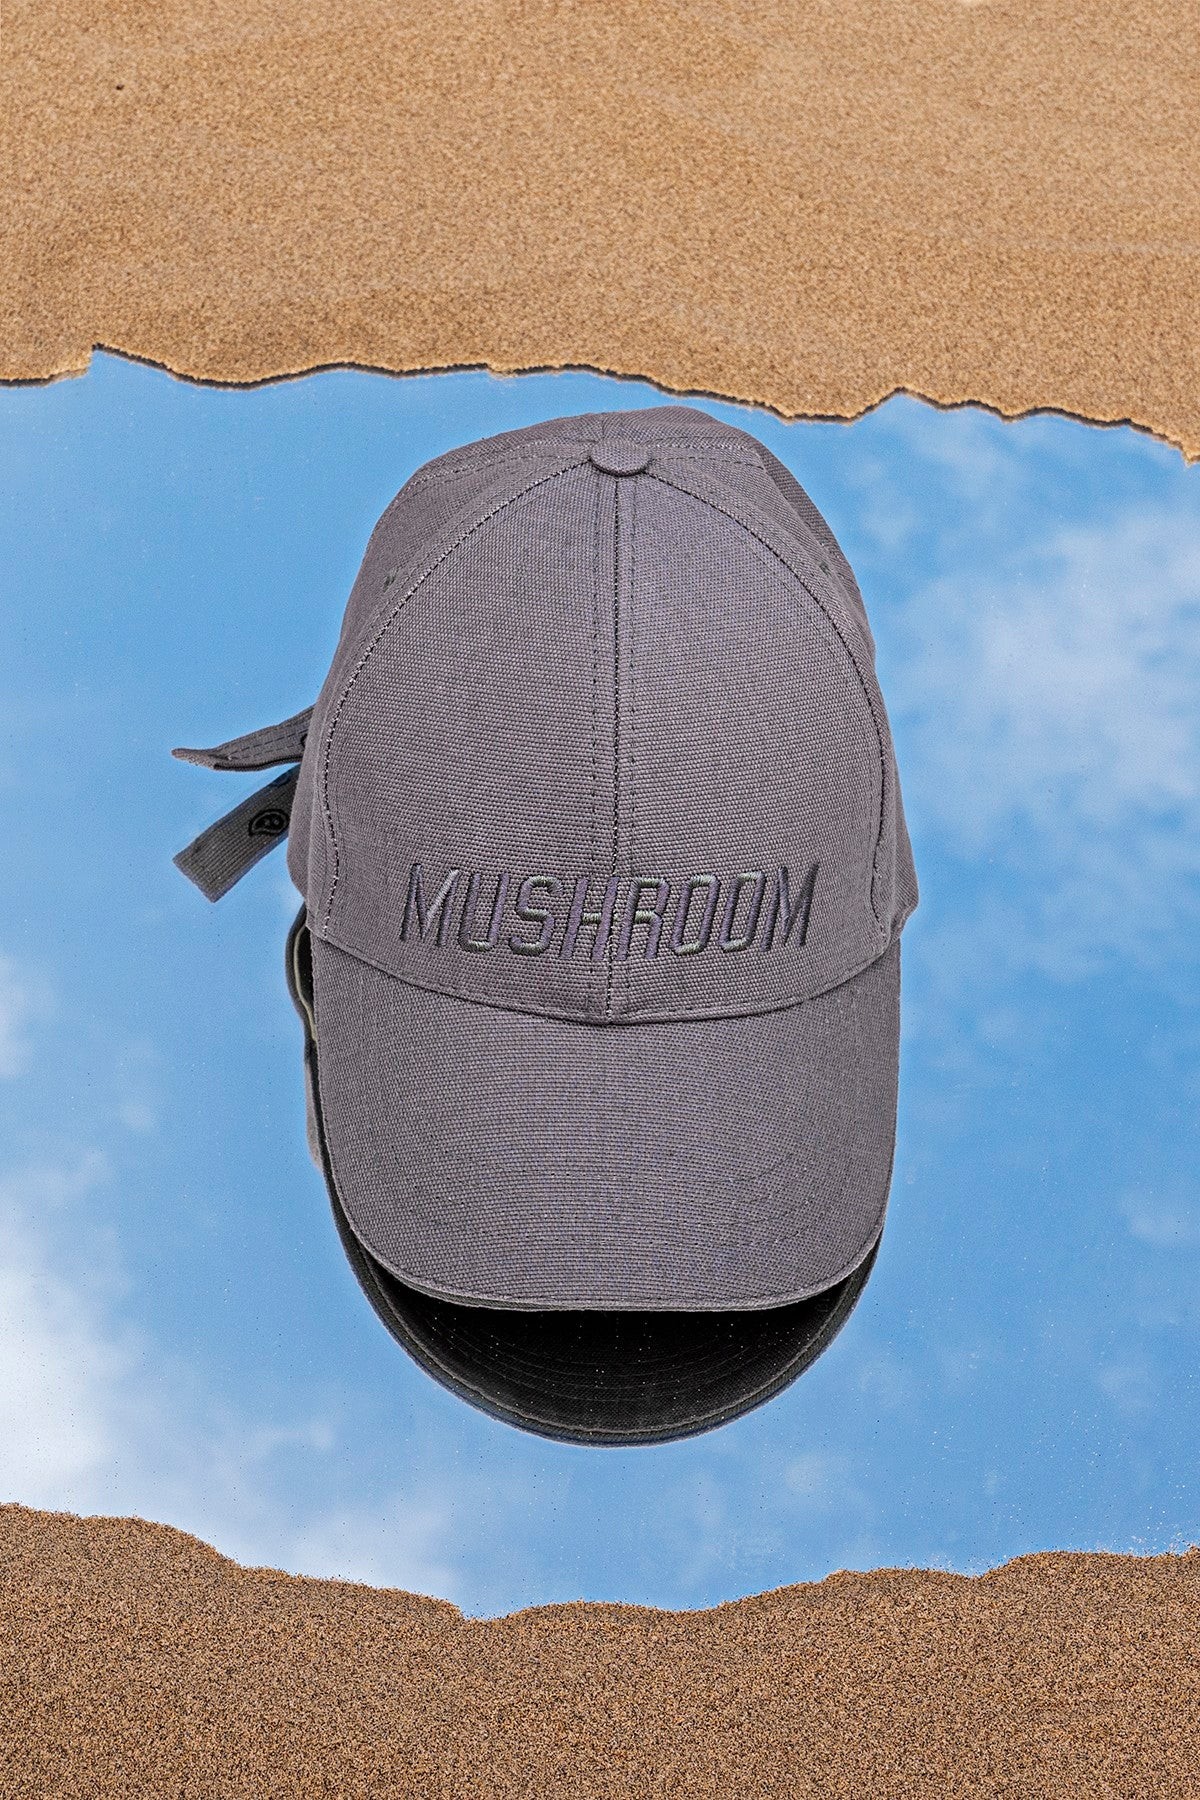 Mushroom ''The Dust Bowl'' Baseball Cap